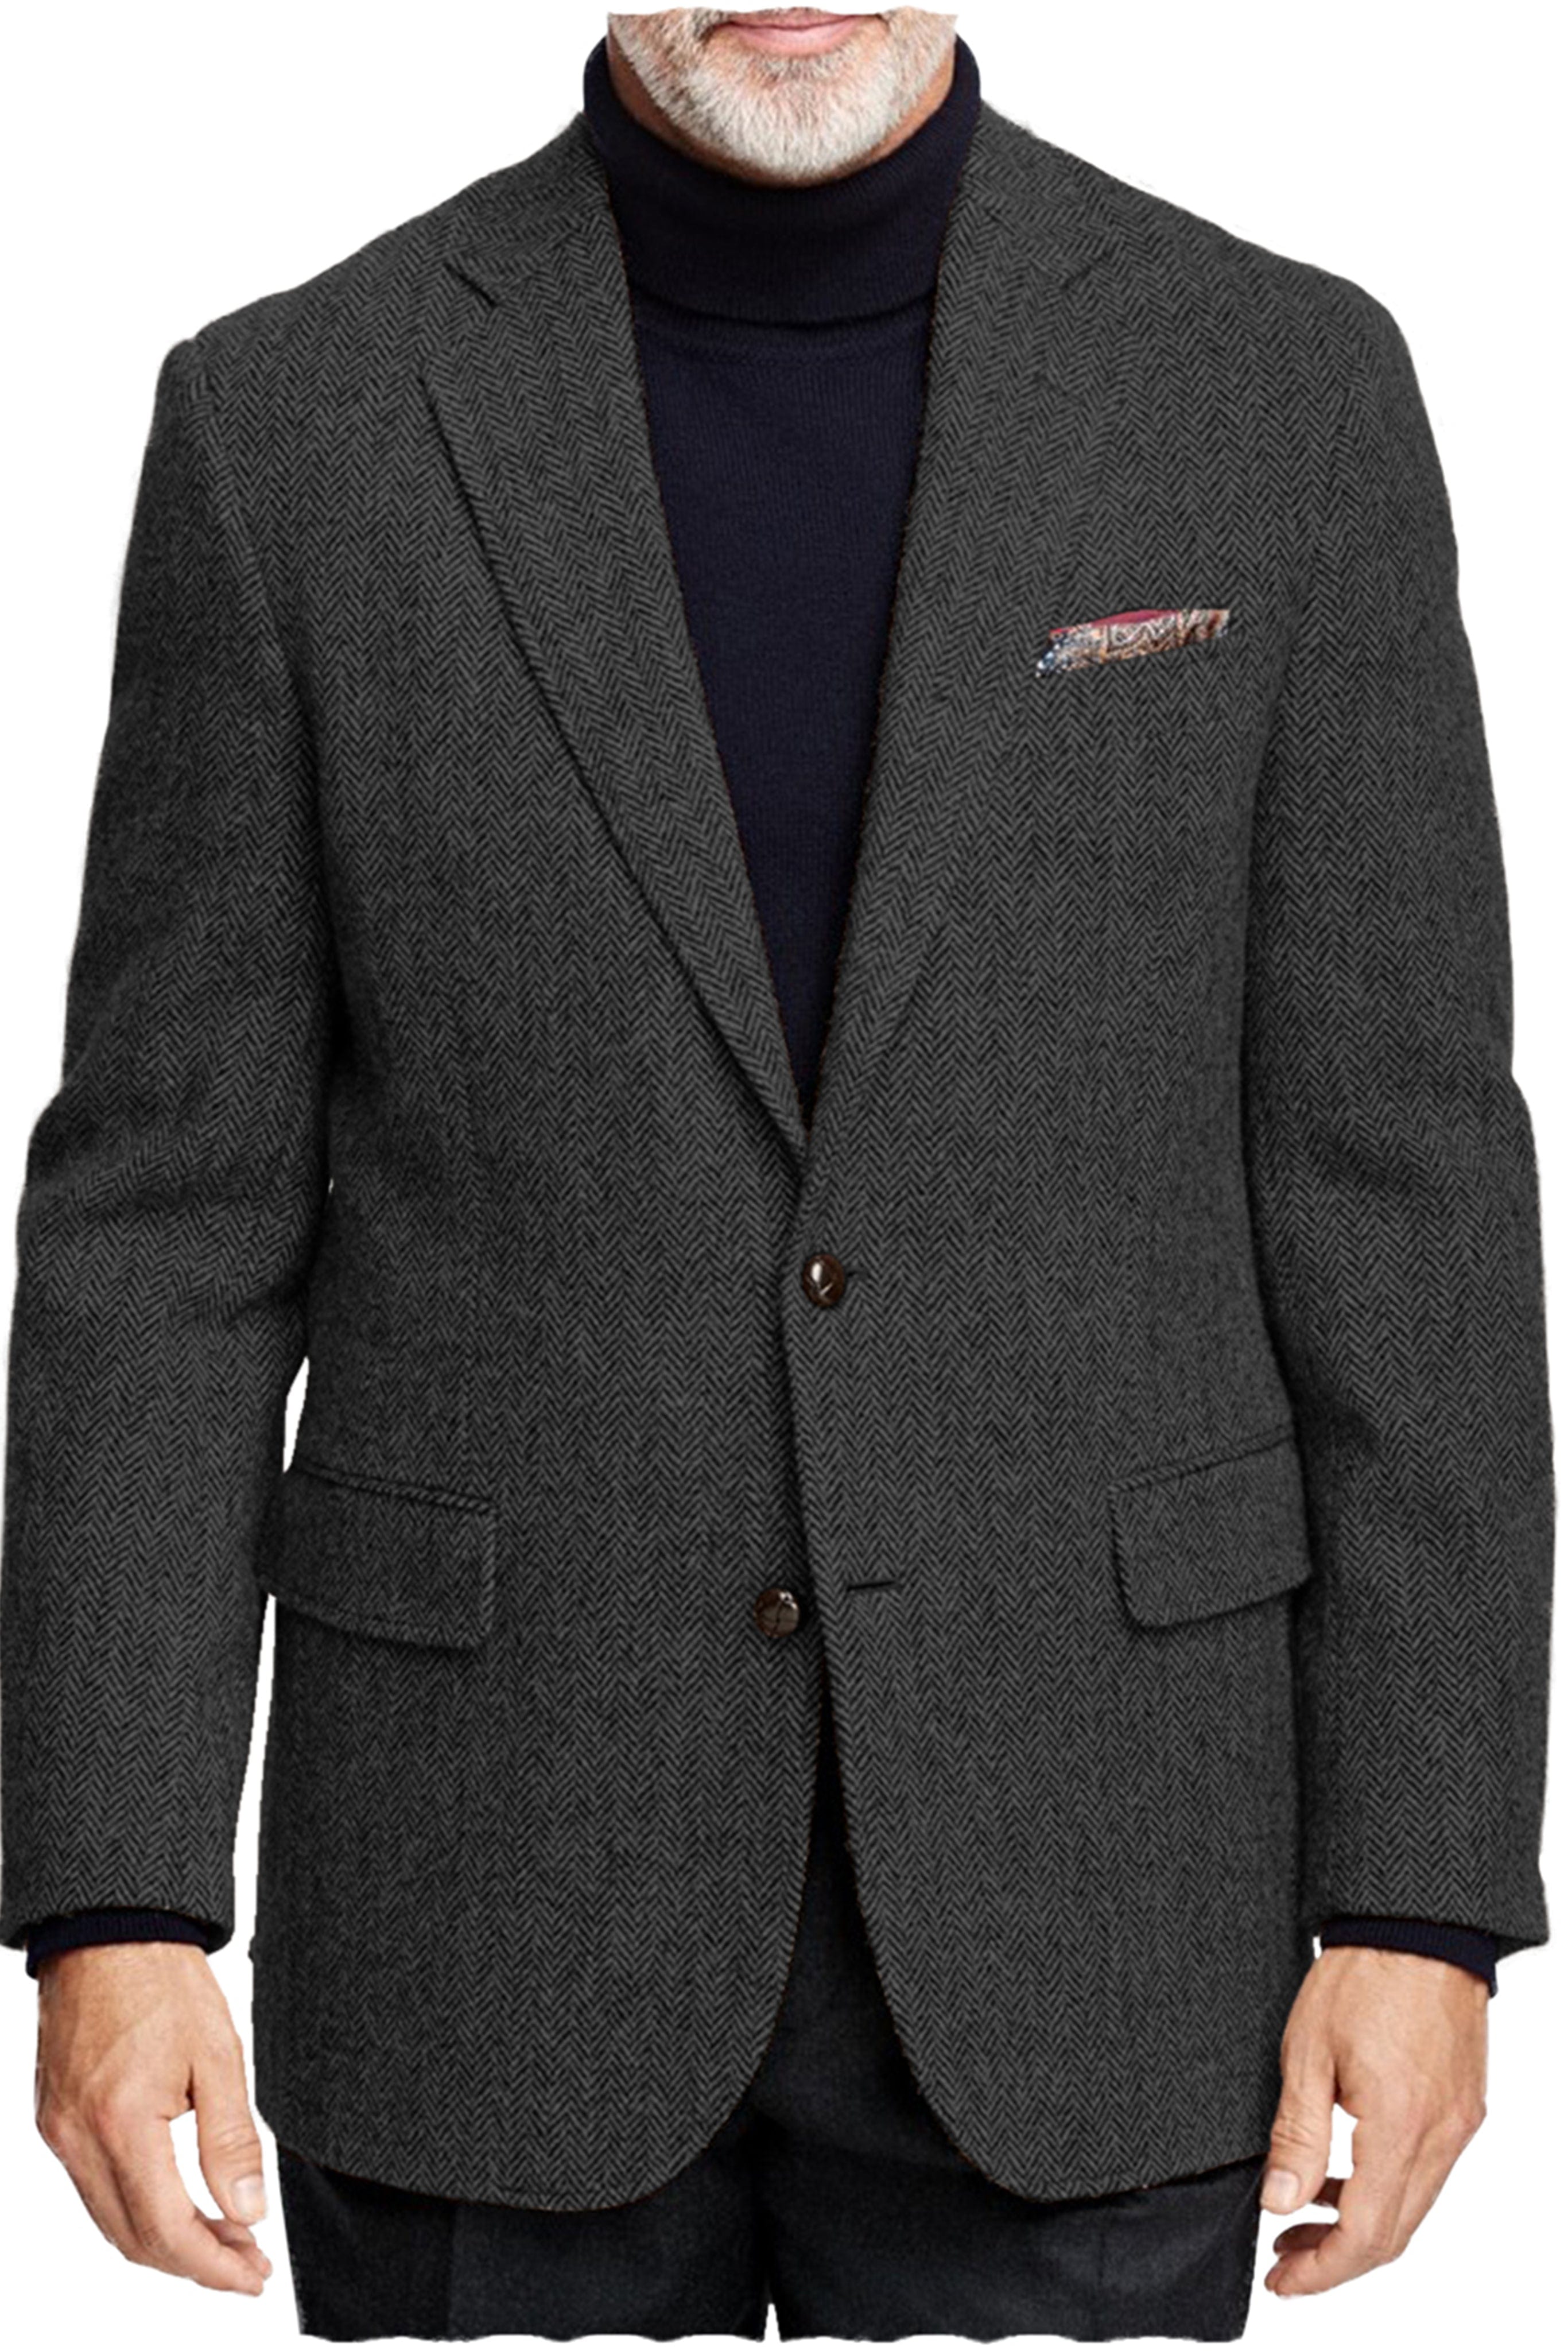 aesido Men's Suit Business Double Button Notch Lapel Blazer